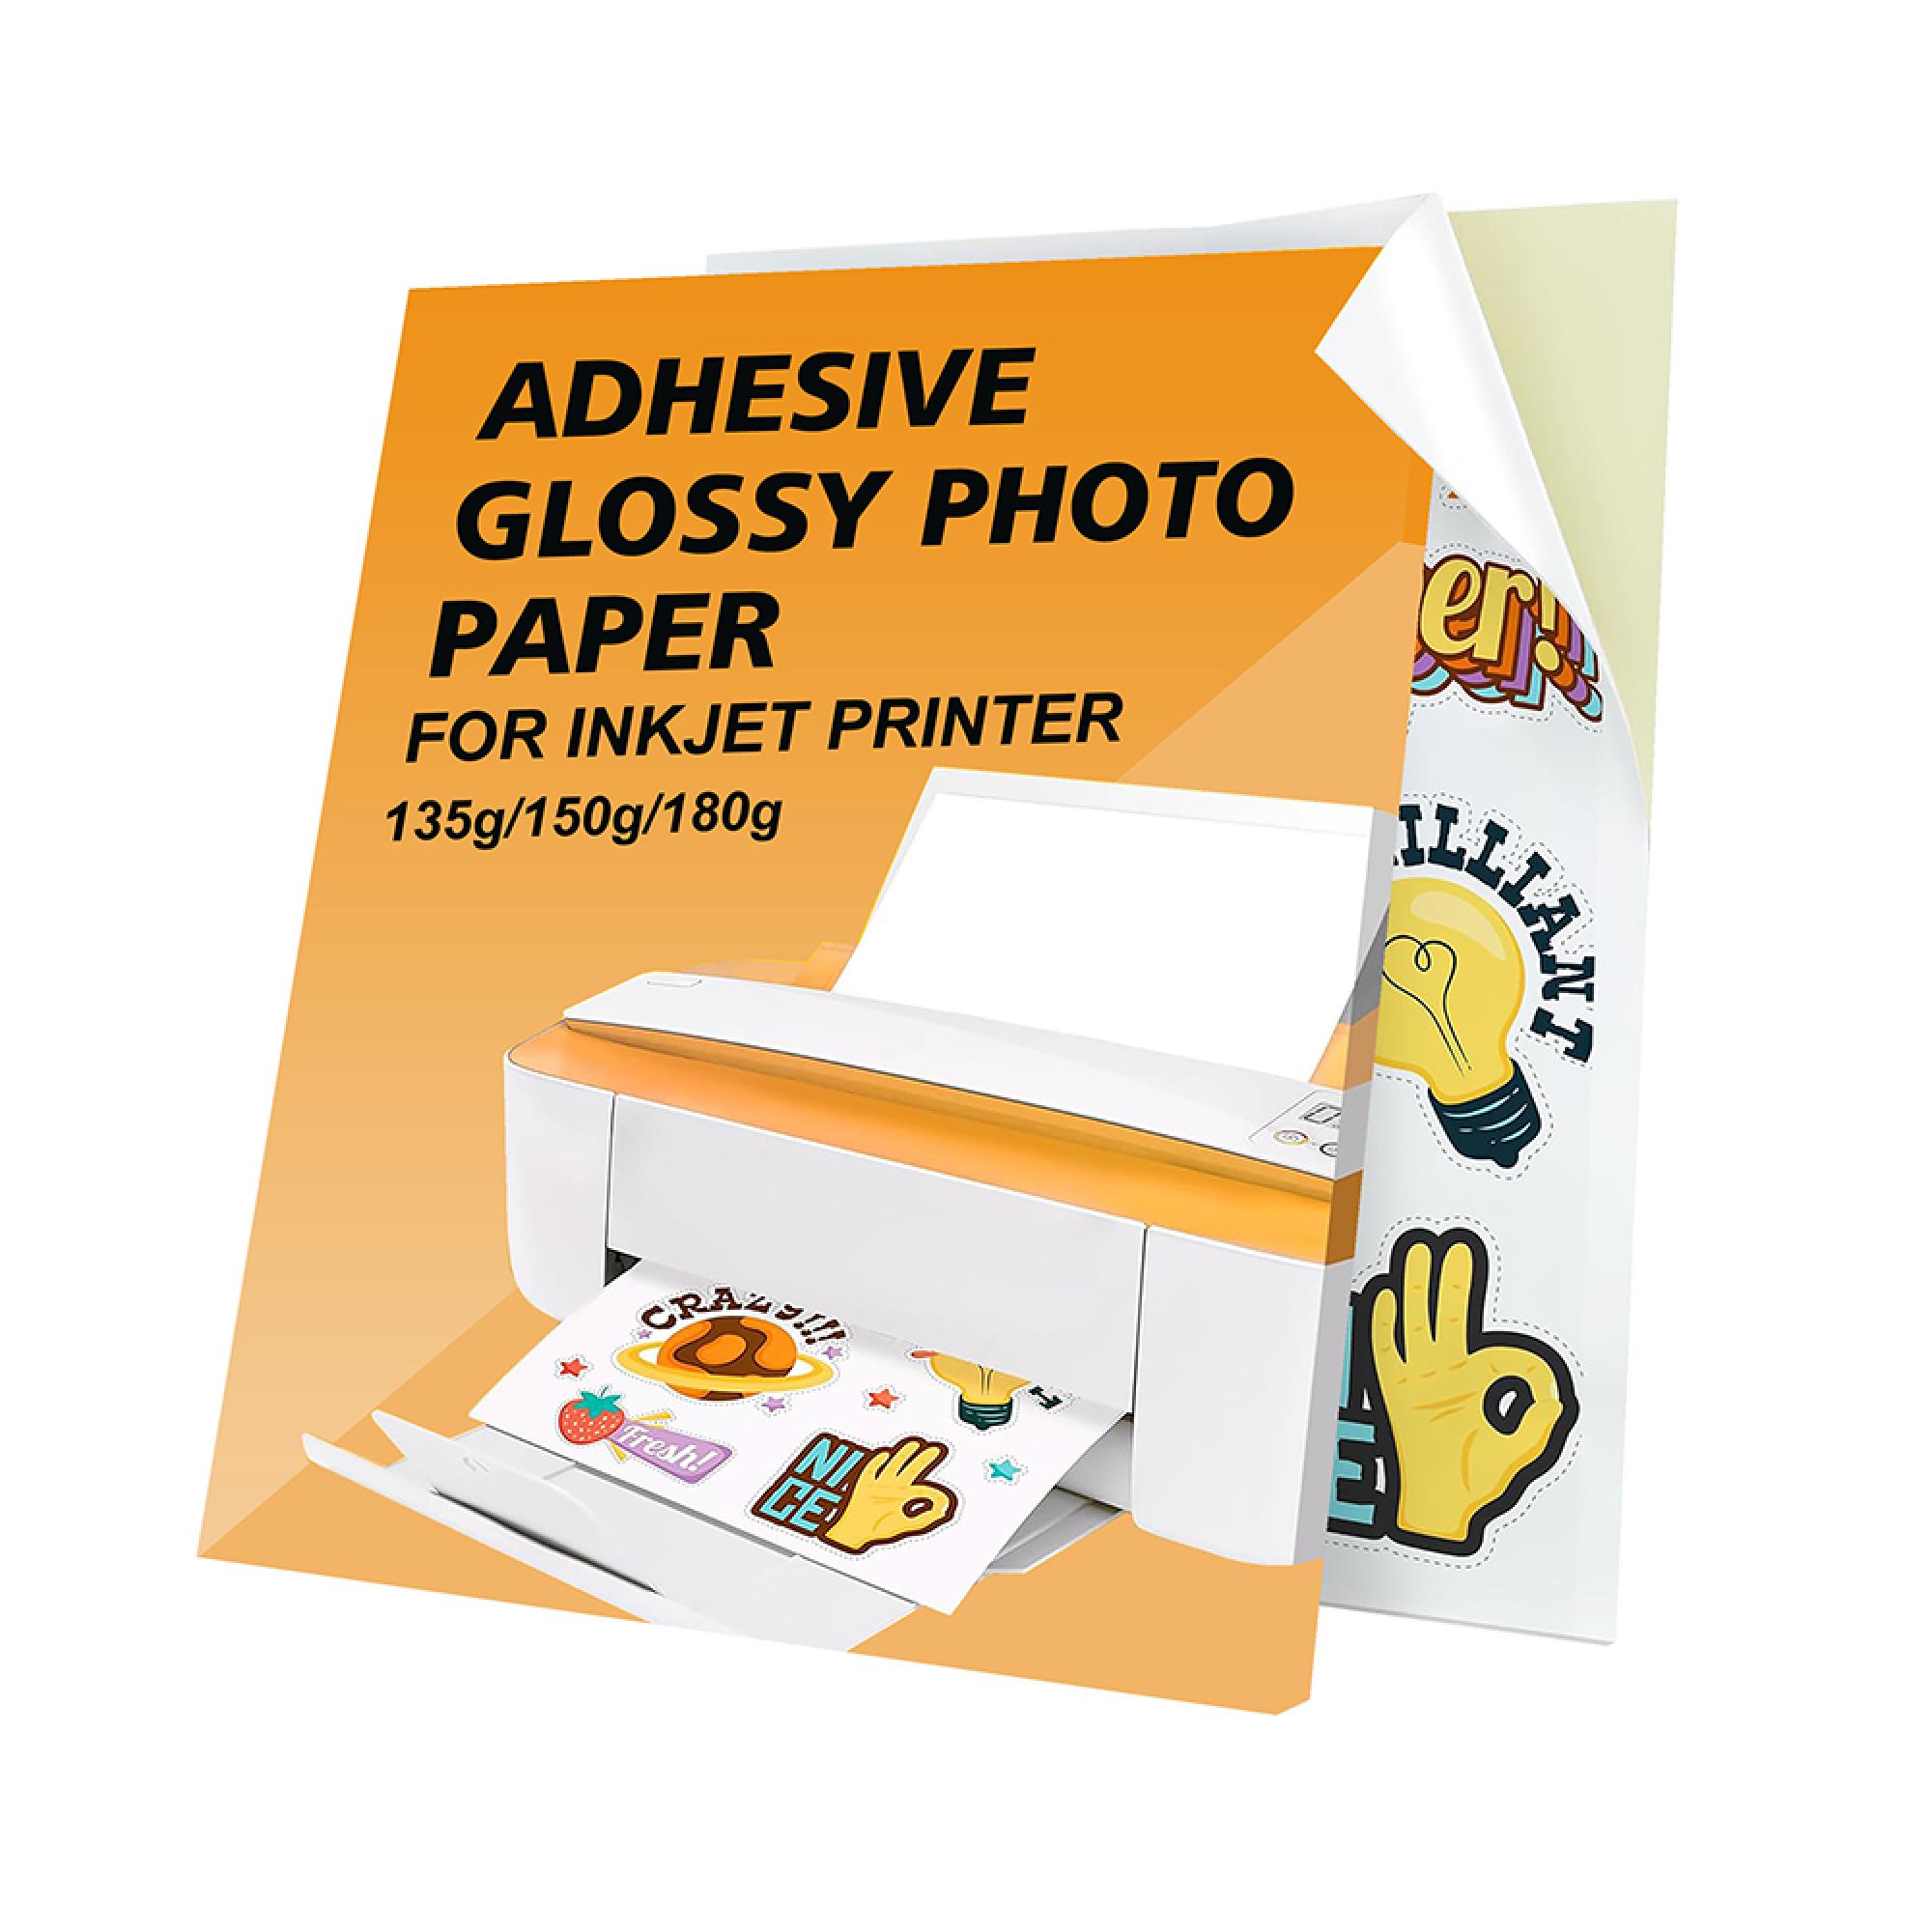 Adhesive Photo Paper